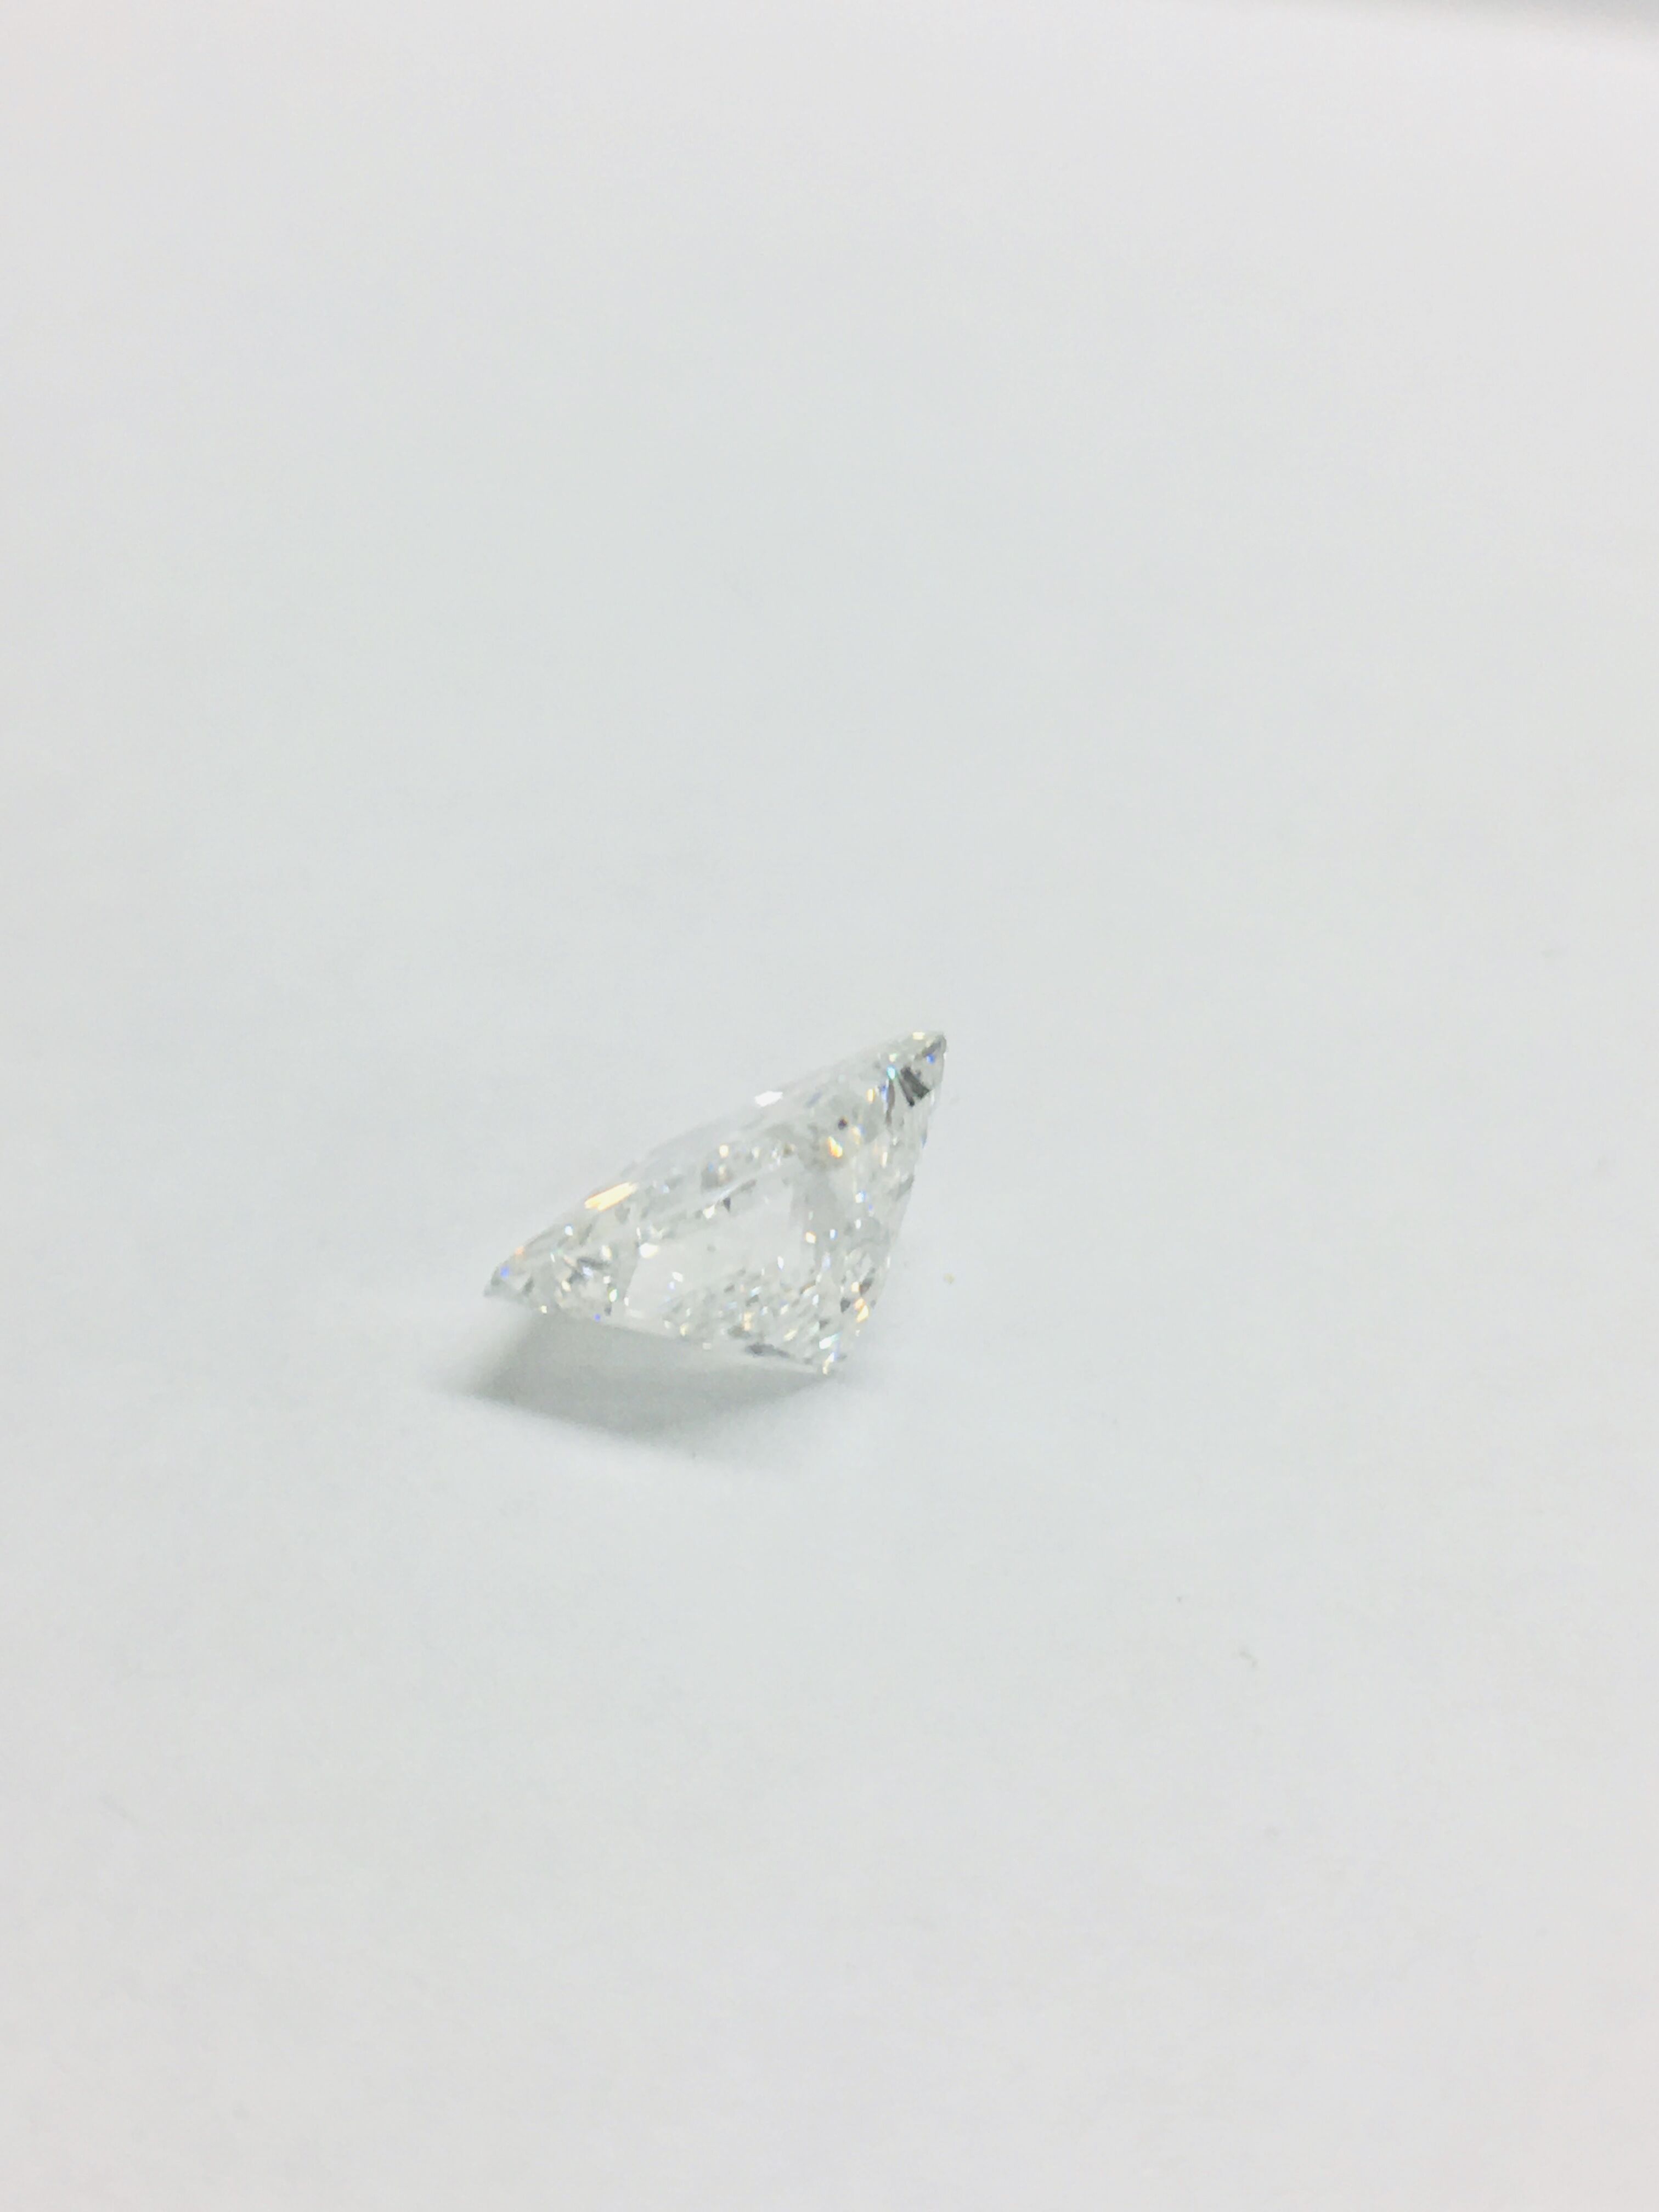 1.95ct Princess cut Diamond - Image 11 of 42